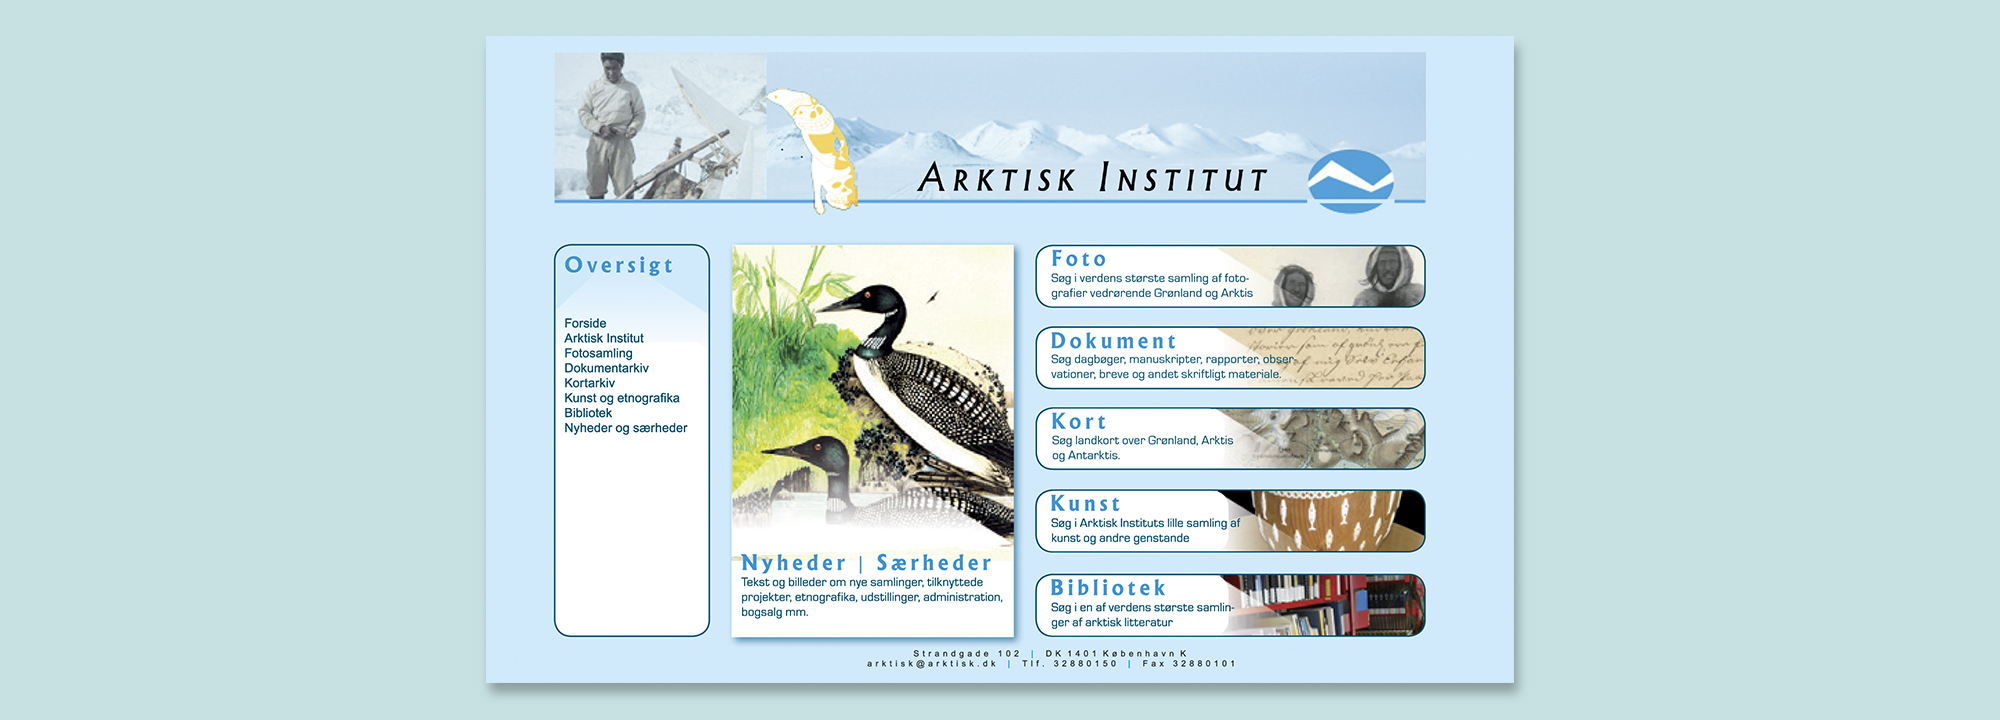 arktisk Instituts hjemmeside